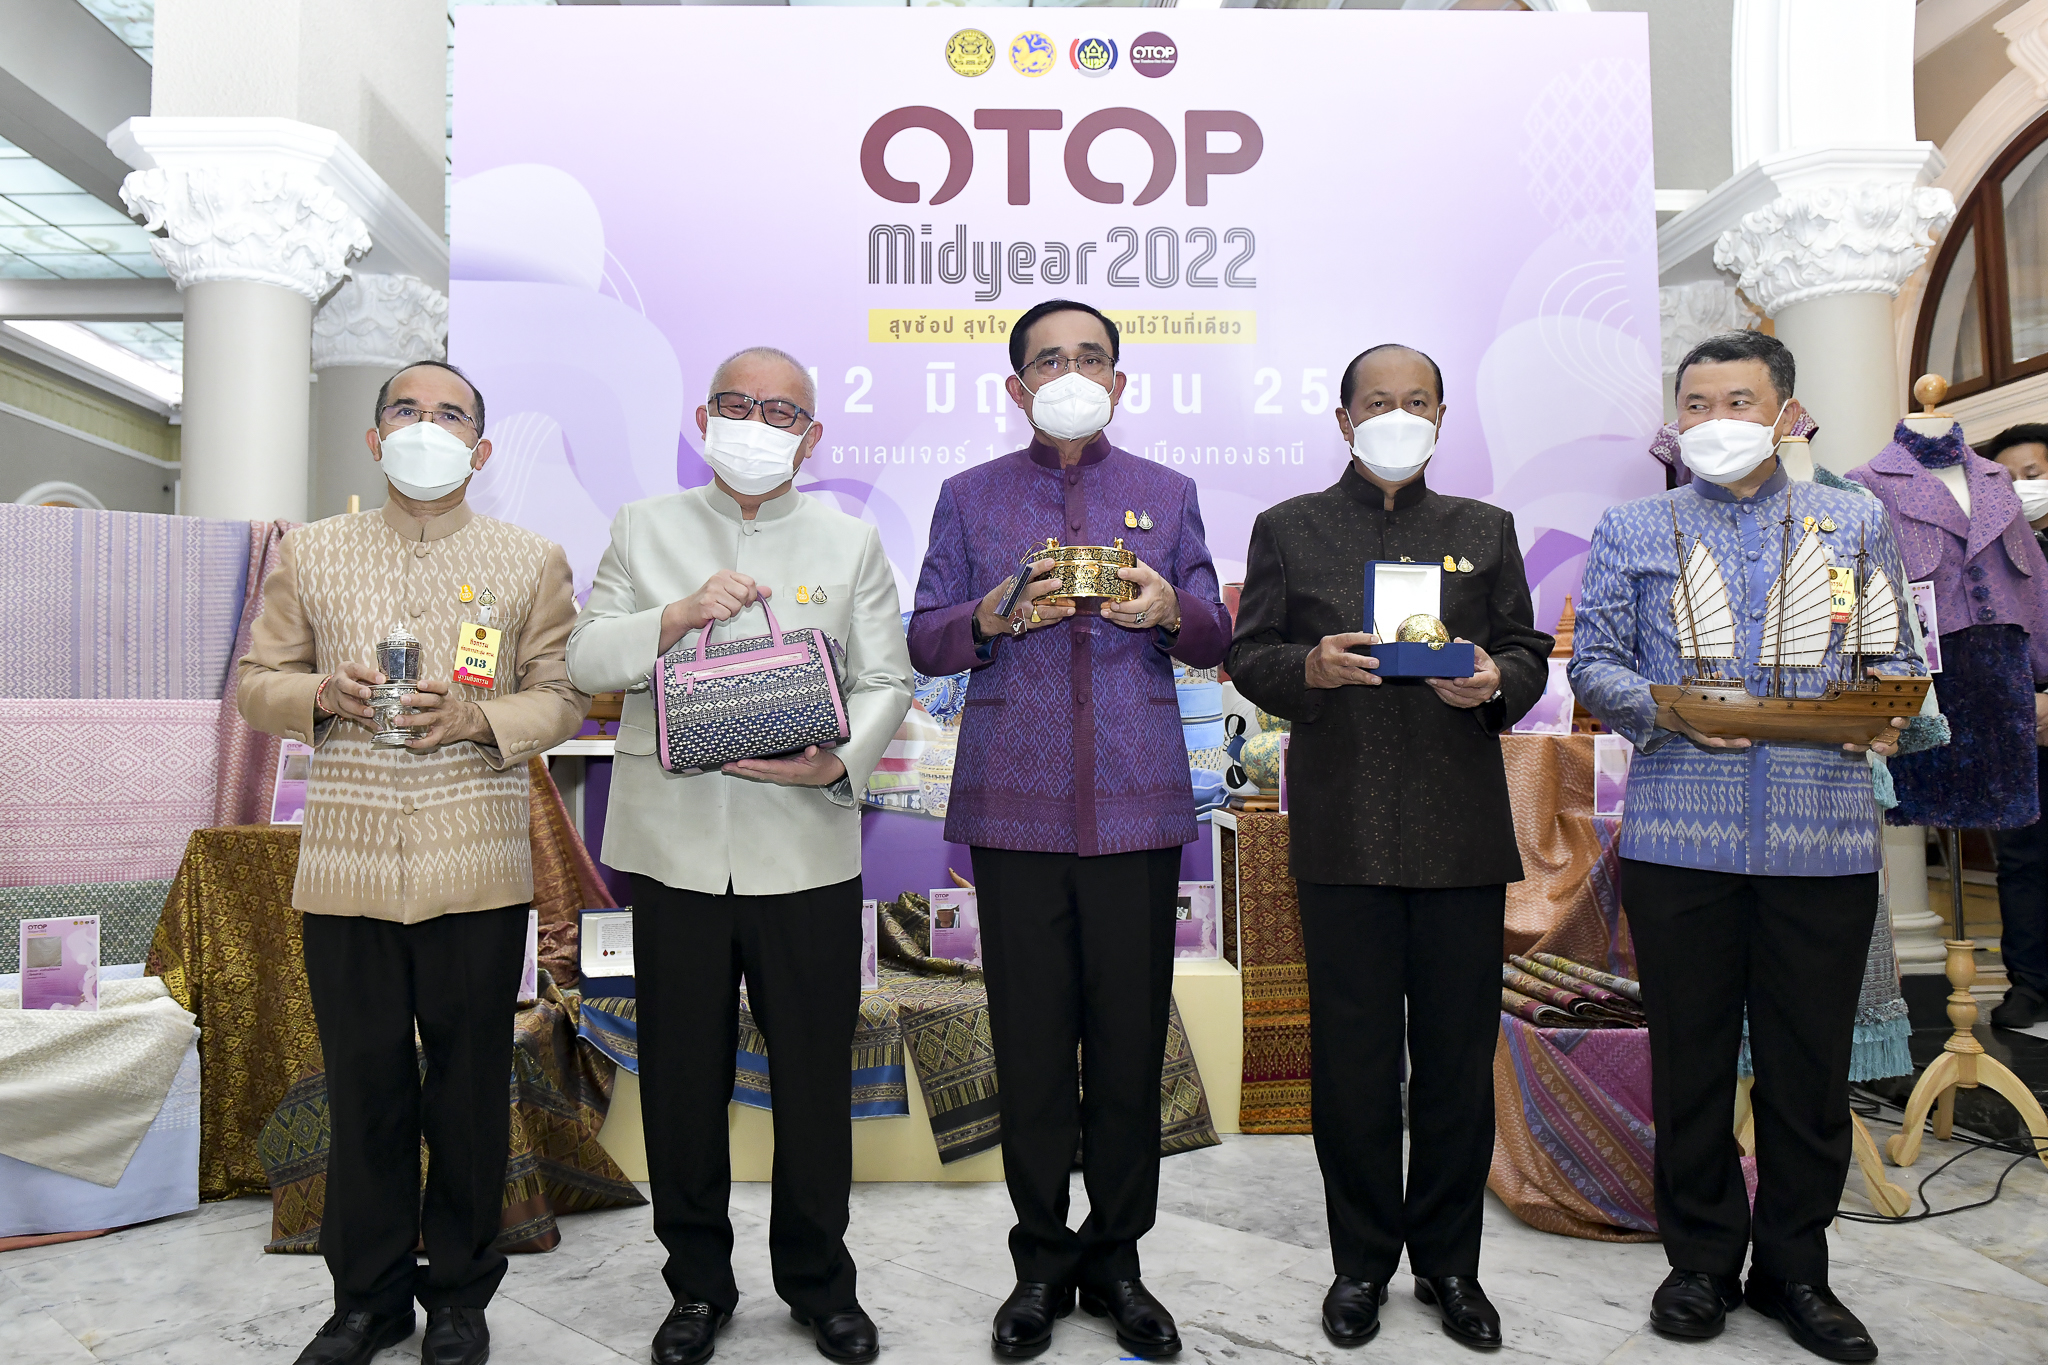 นายกรัฐมนตรี เชิญชวนคนไทยเที่ยวงาน OTOP Midyear 2022 “สุขช้อป สุขใจ สุขทั่วไทยรวมไว้ในที่เดียว”